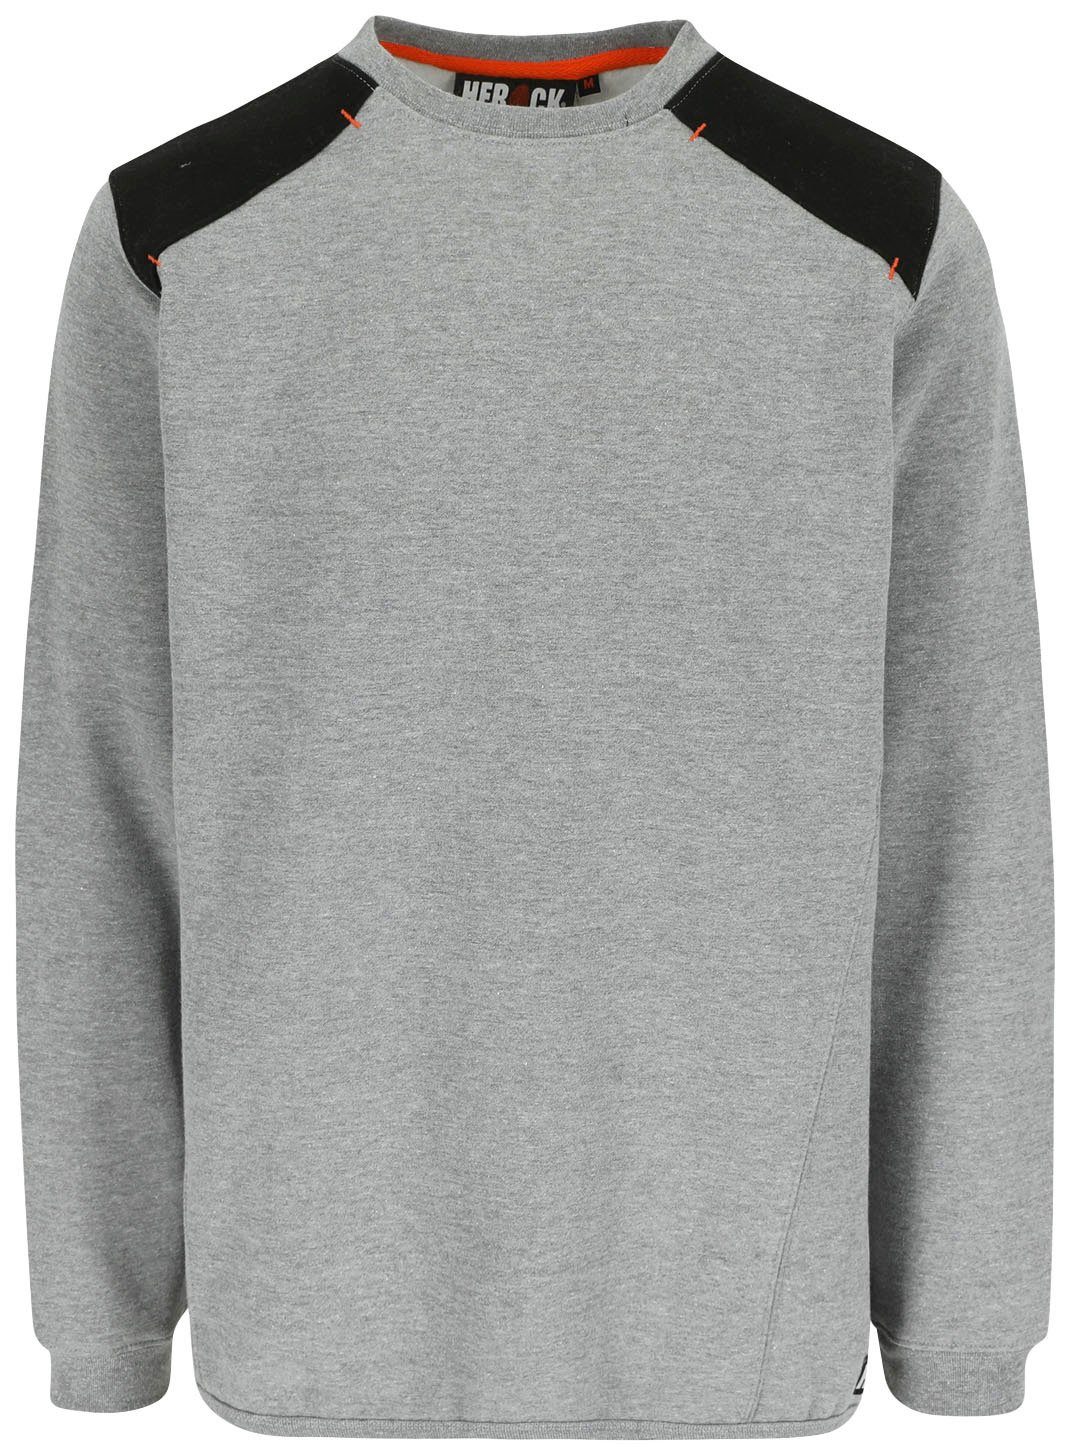 grau Rückenteil Artemis Herock - weiches Rippstrick Sweater Kragen Rundhalspullover Tragegefühl Langes -